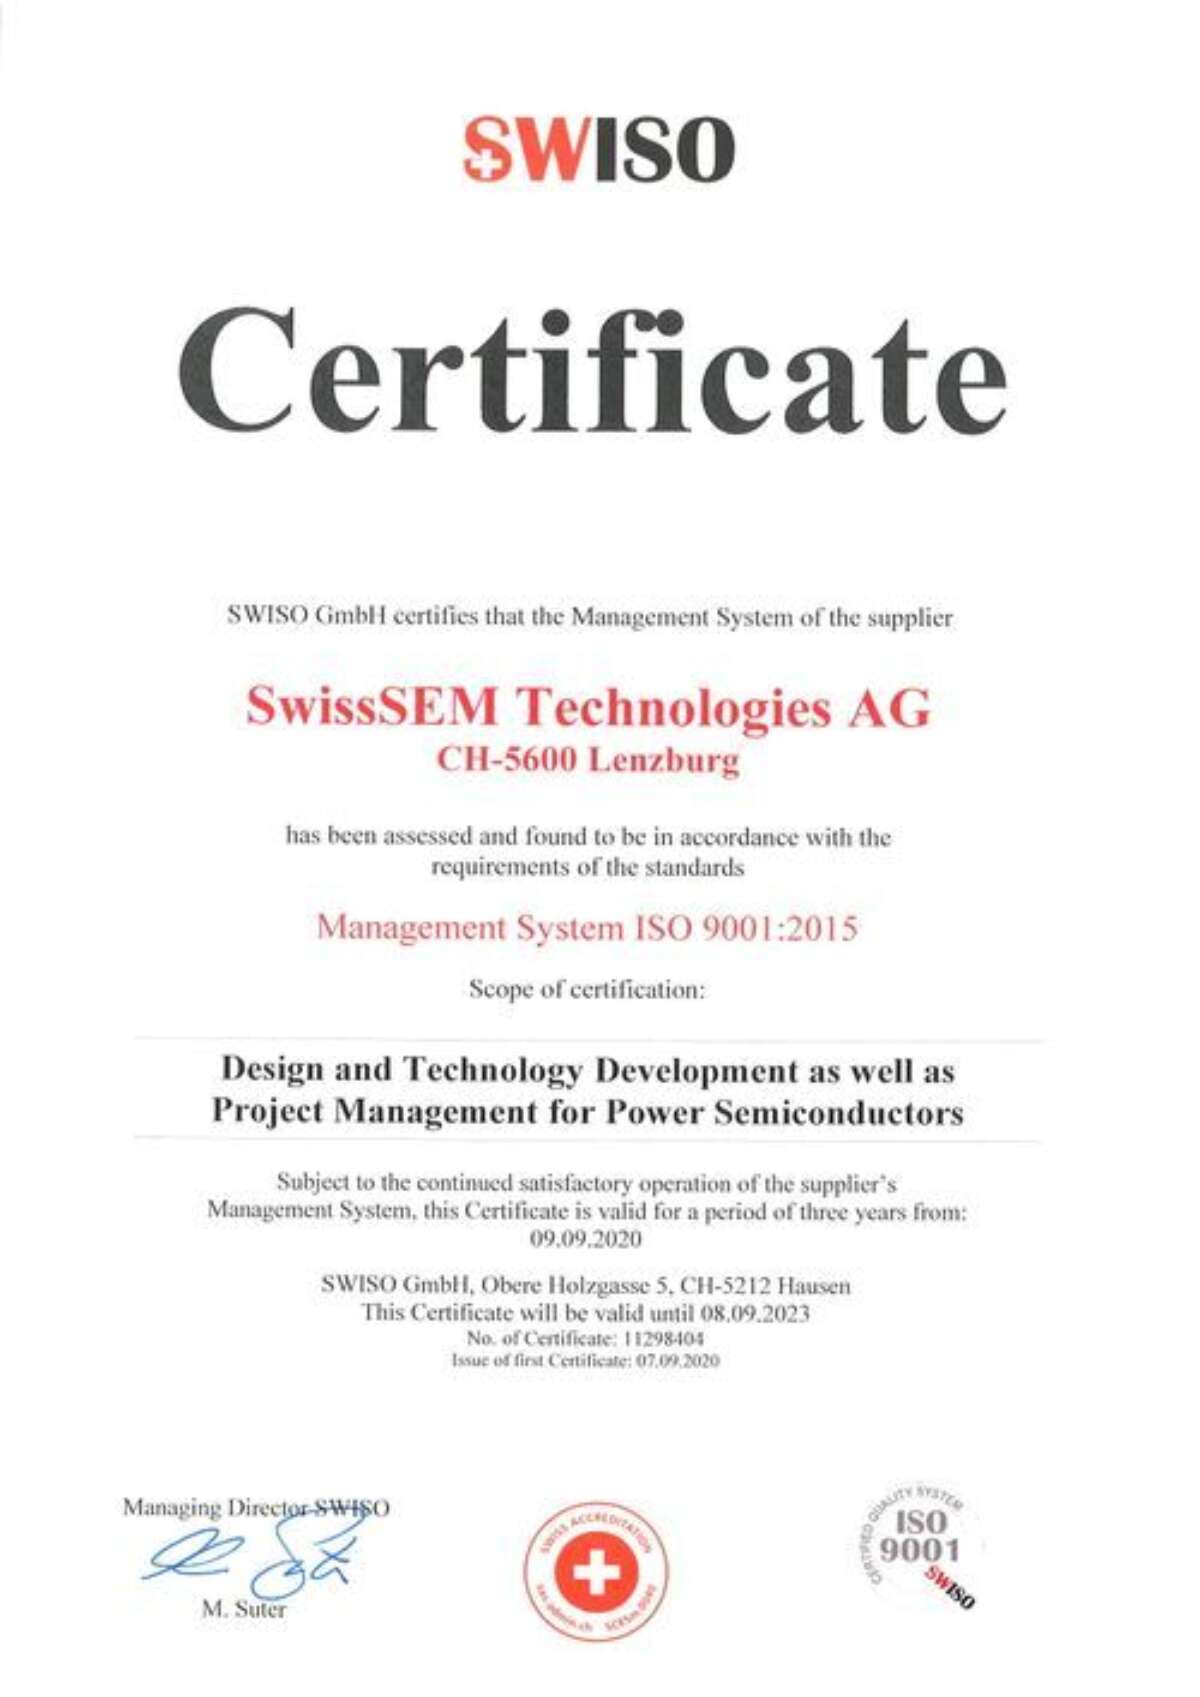 ISO9001 Certificate Swiss SEM 2202ff8b 500w